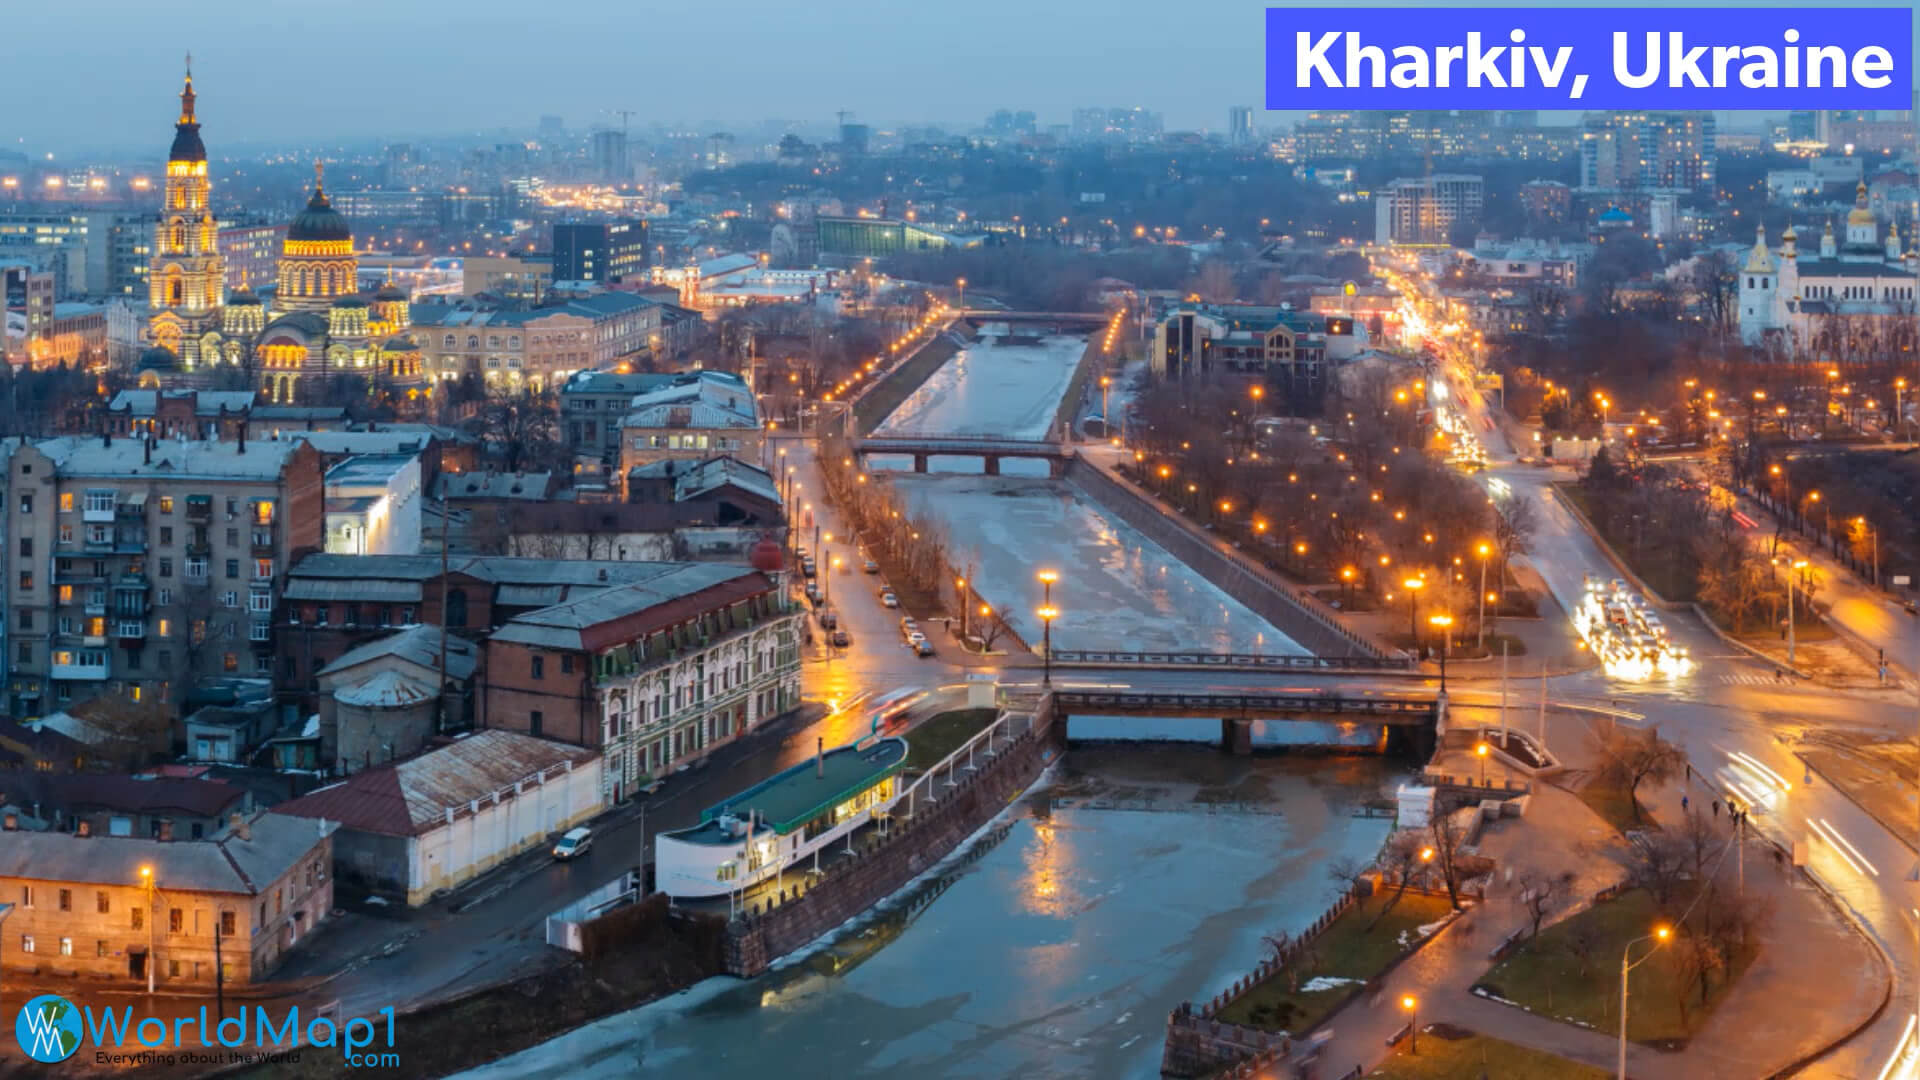 L'invasion russe à Kharkiv en Ukraine